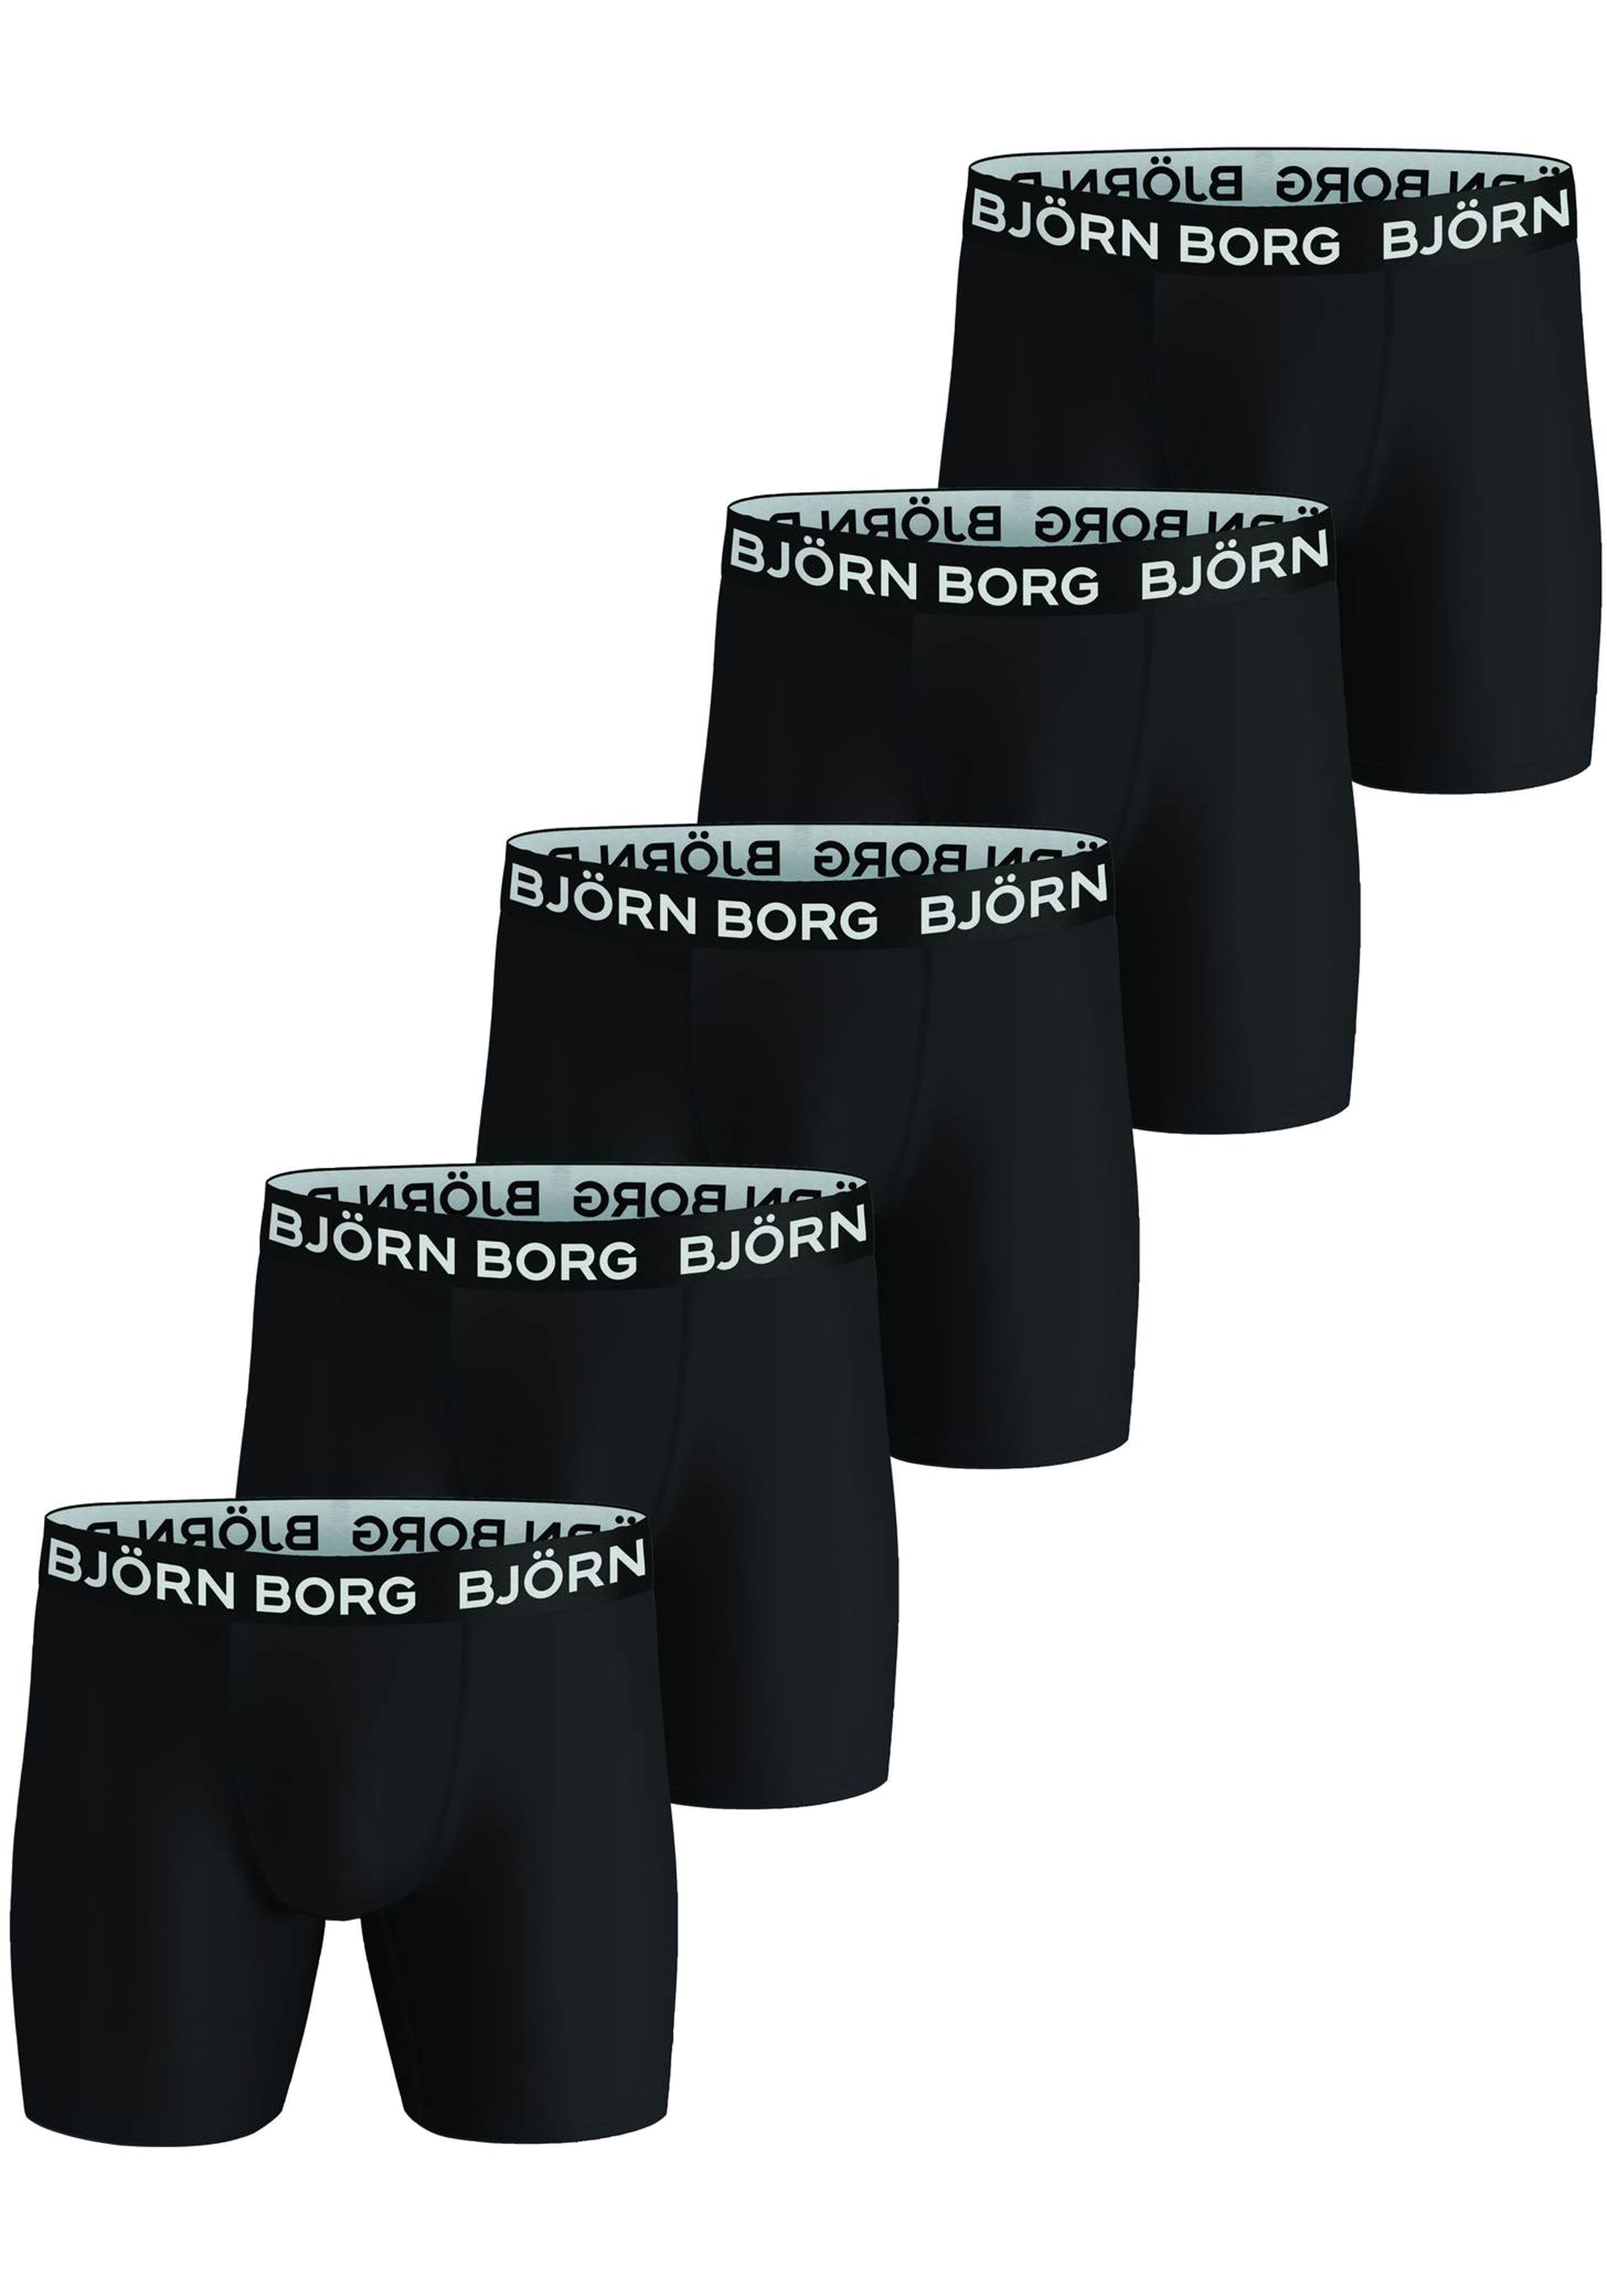 Bjorn Borg Performance boxers, microfiber heren boxers lange pijpen (5-pack), zwart